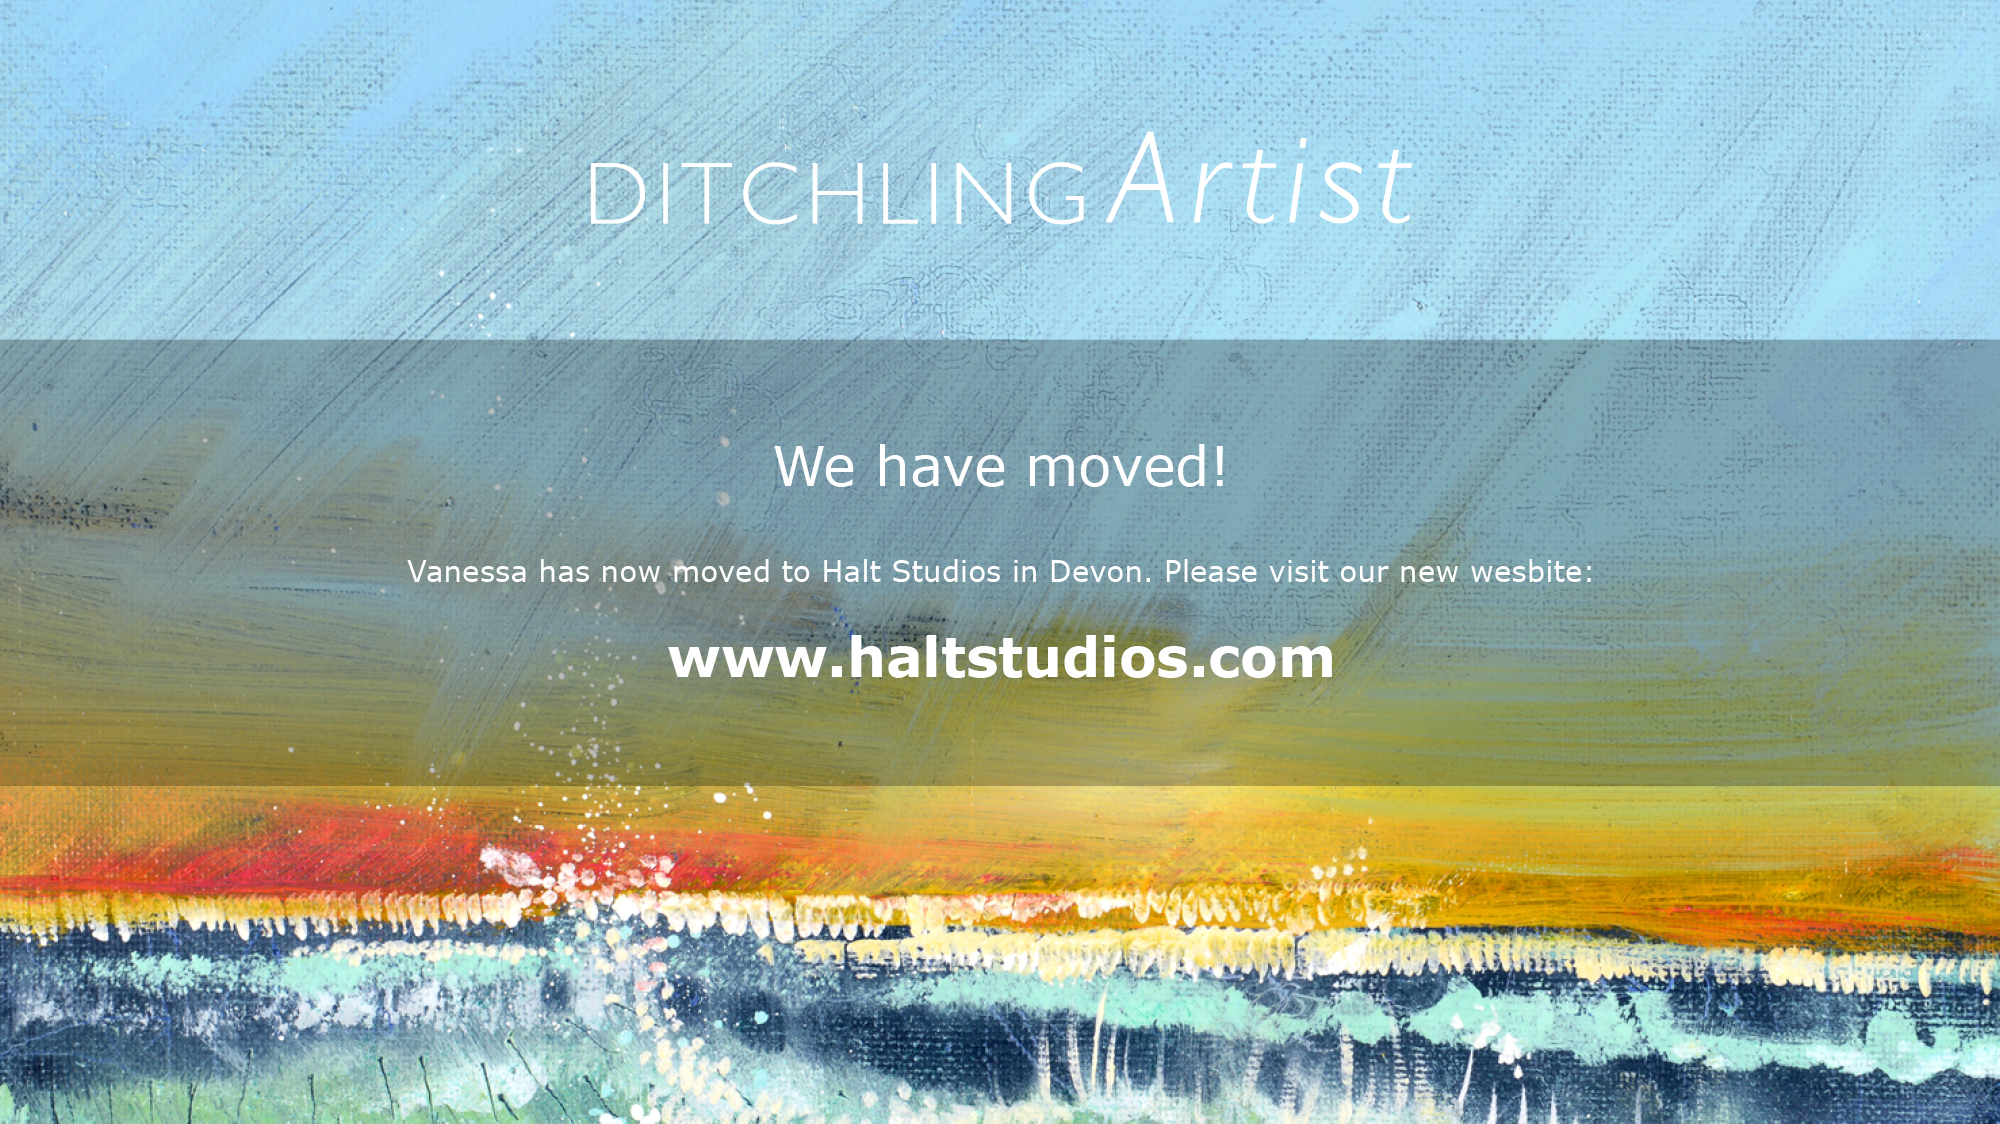 Halt Studios